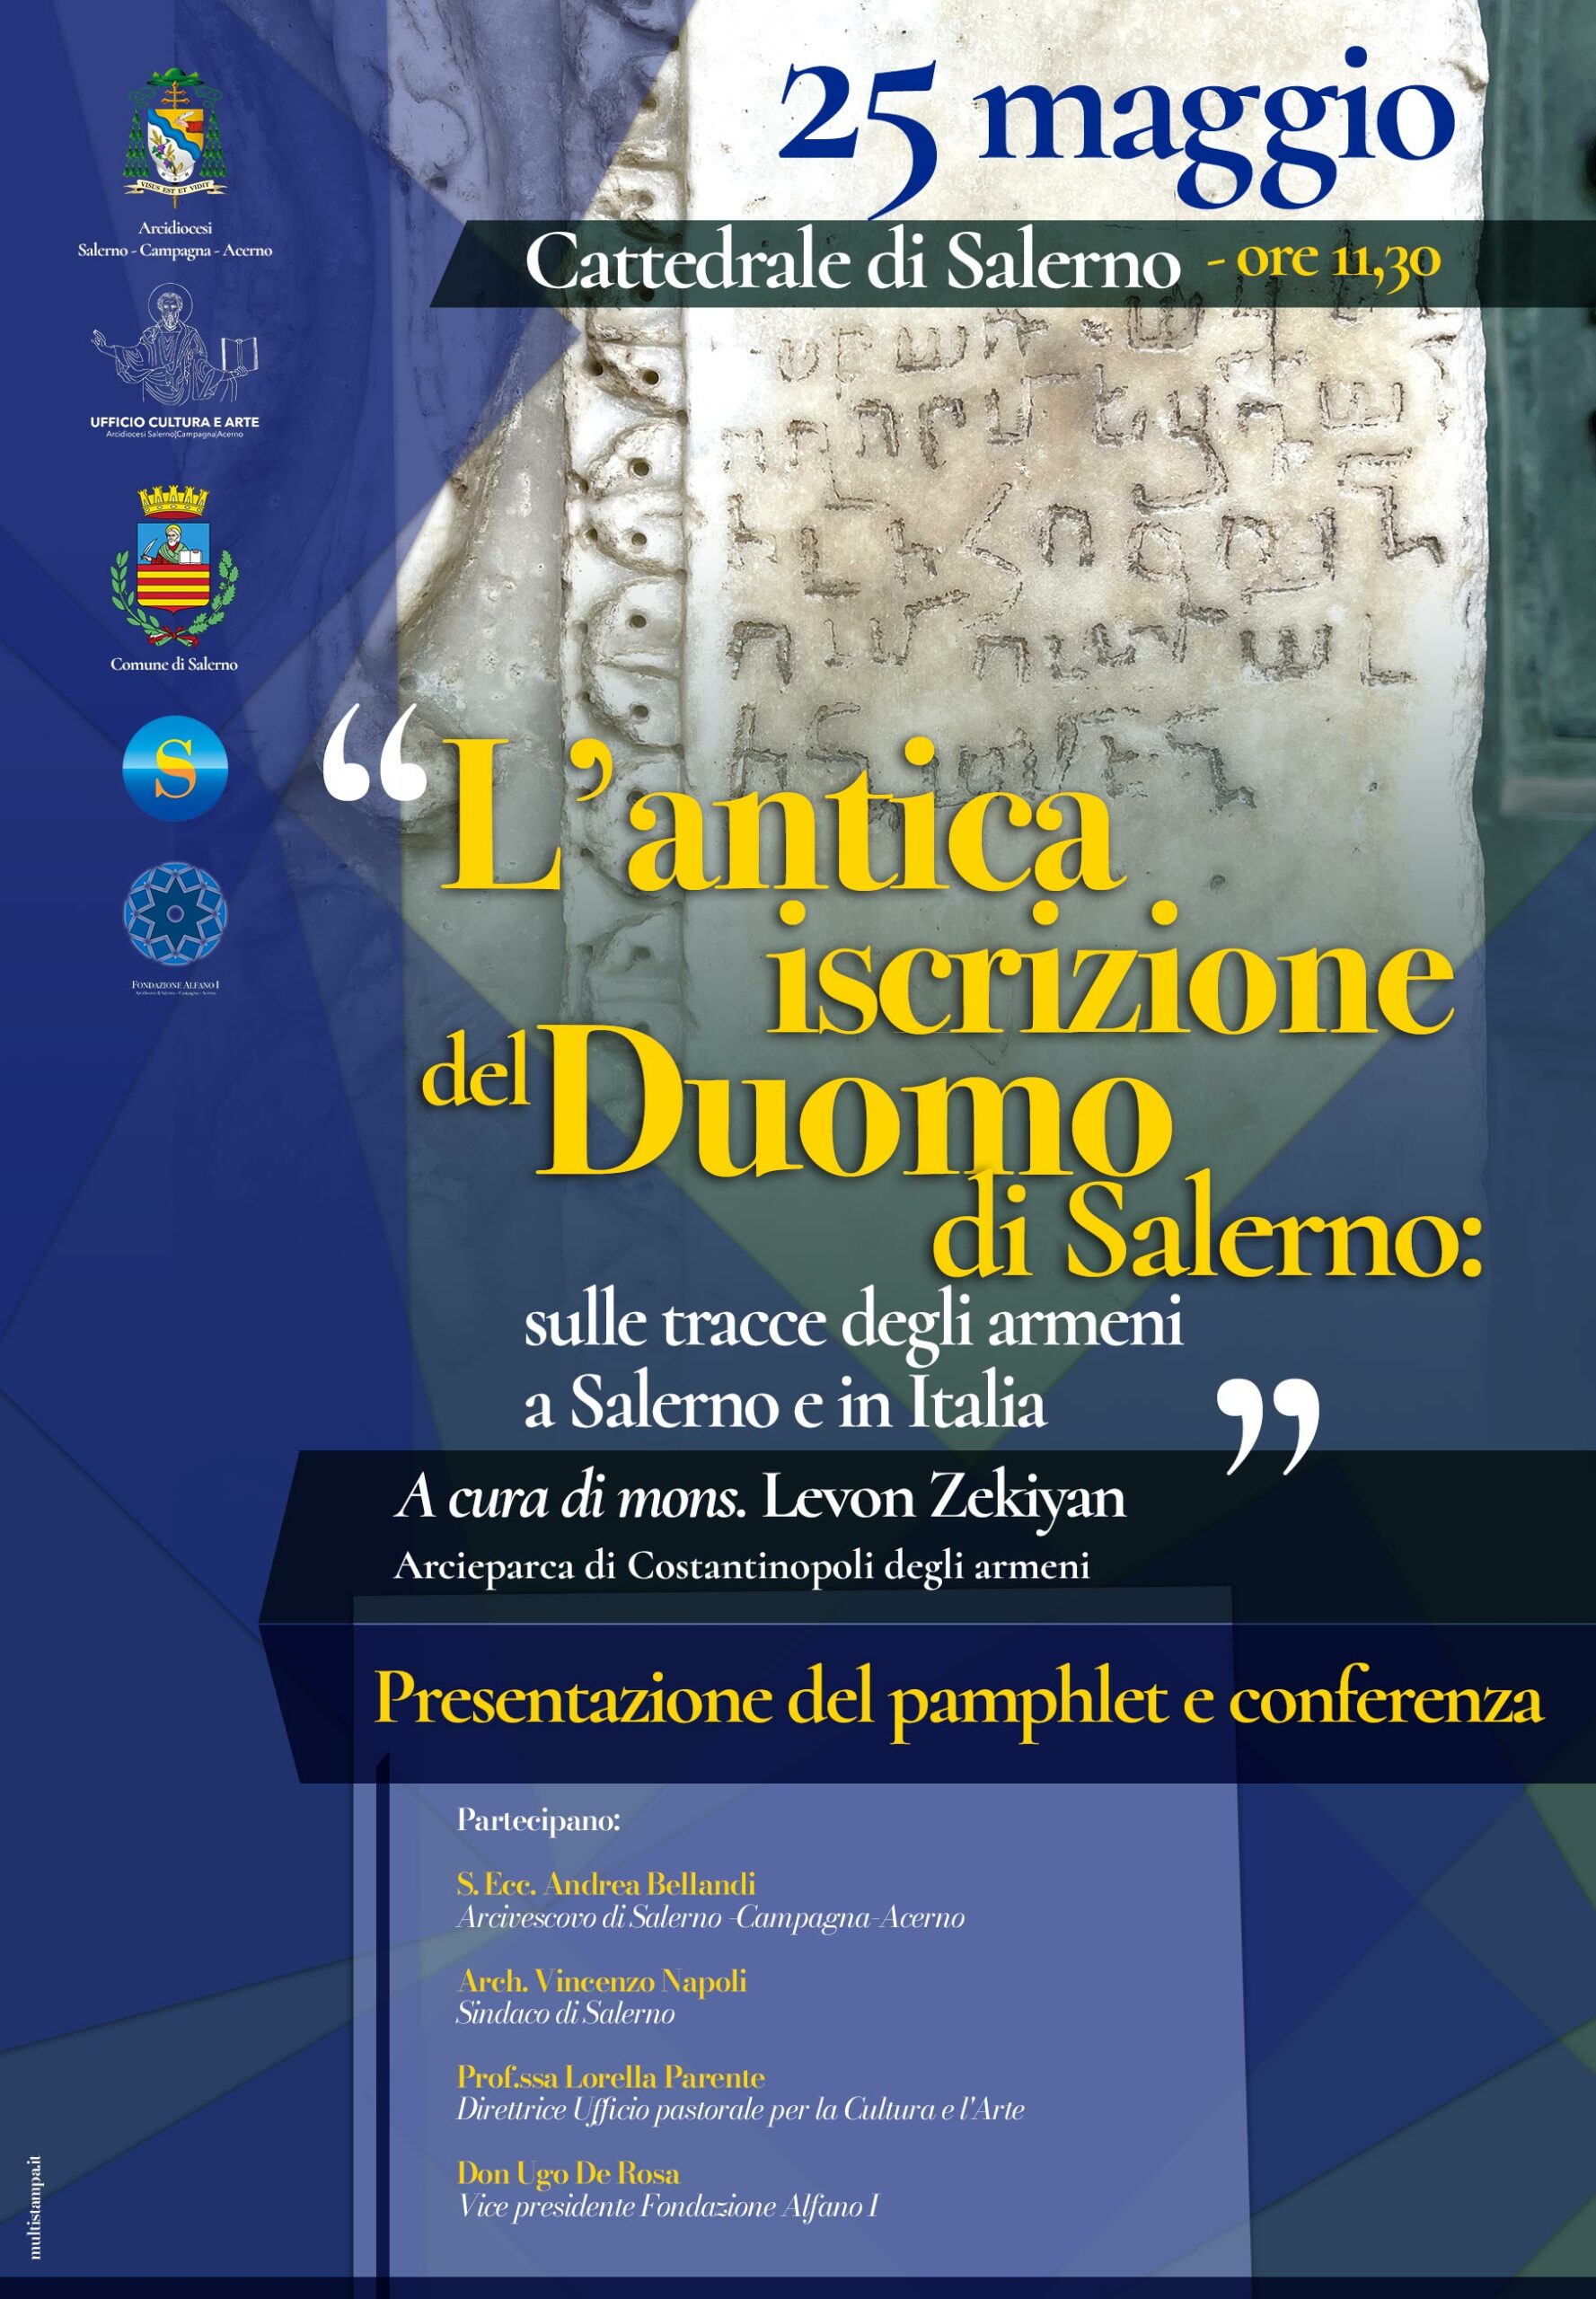 Salerno: “L’antica iscrizione del Duomo di Salerno”, presentazione pamphlet